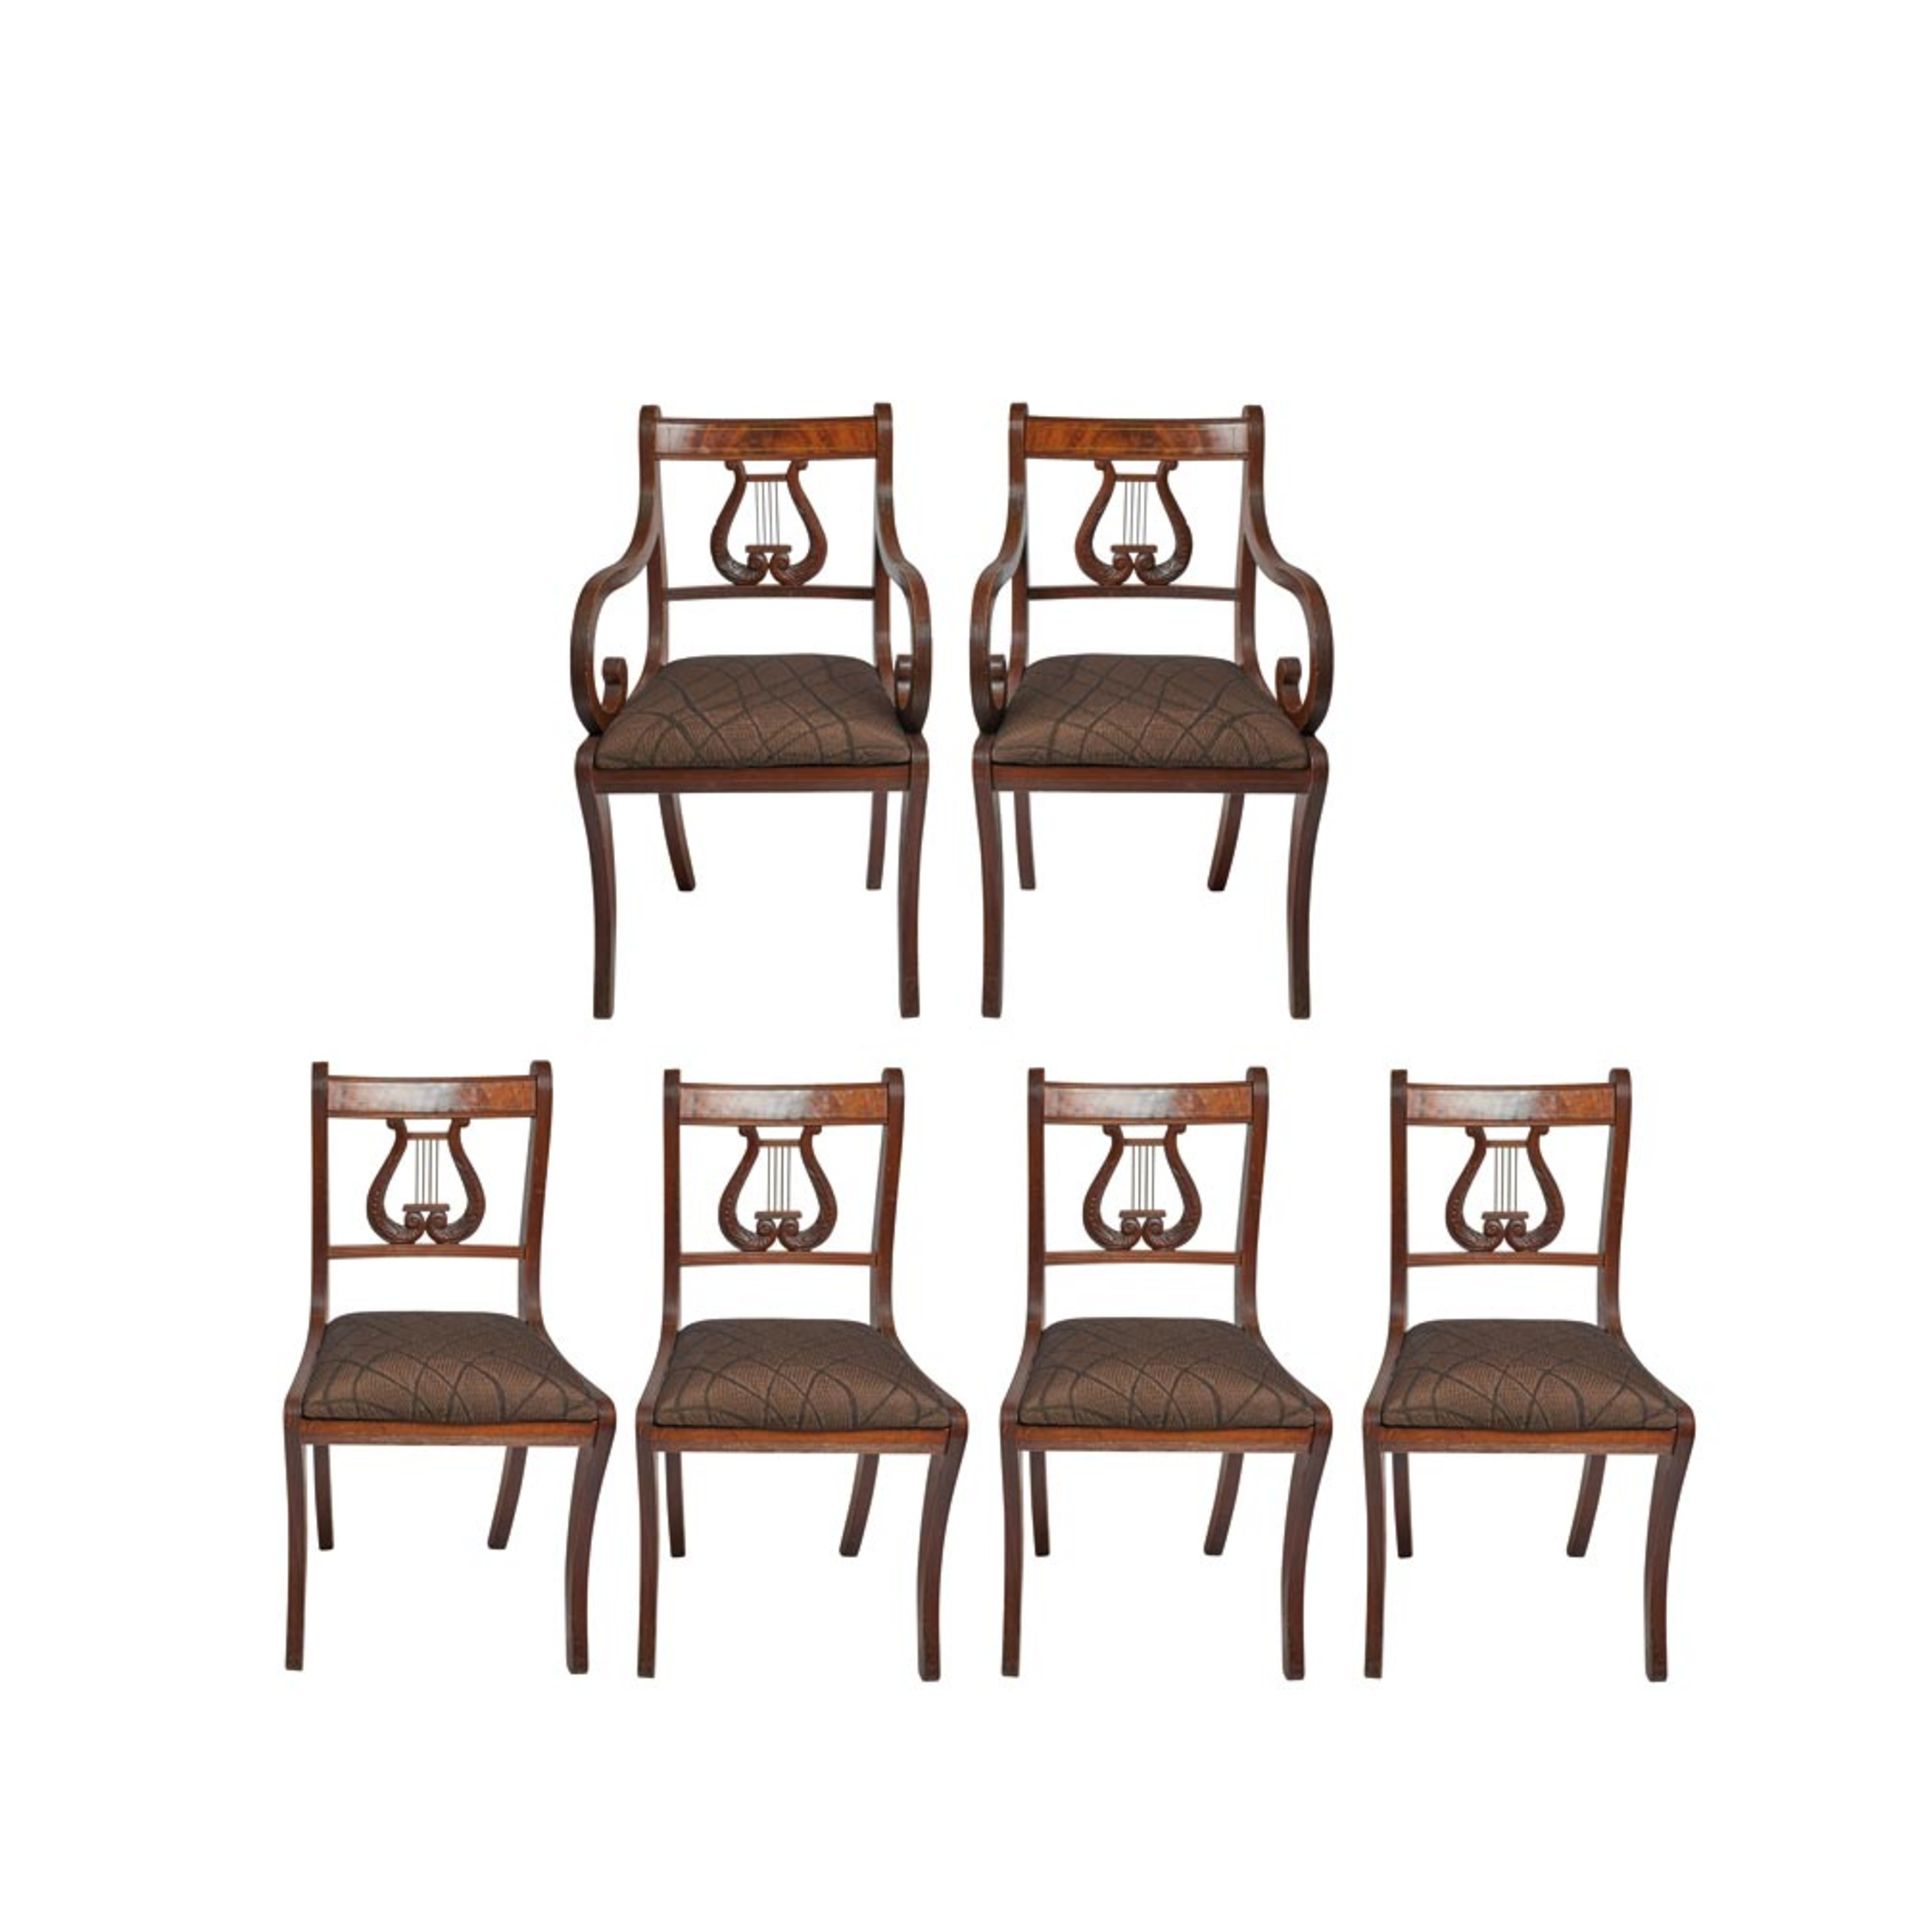 Juego de cuatro sillas y pareja de sillones estilo Regency en madera de caoba con respaldo diseño